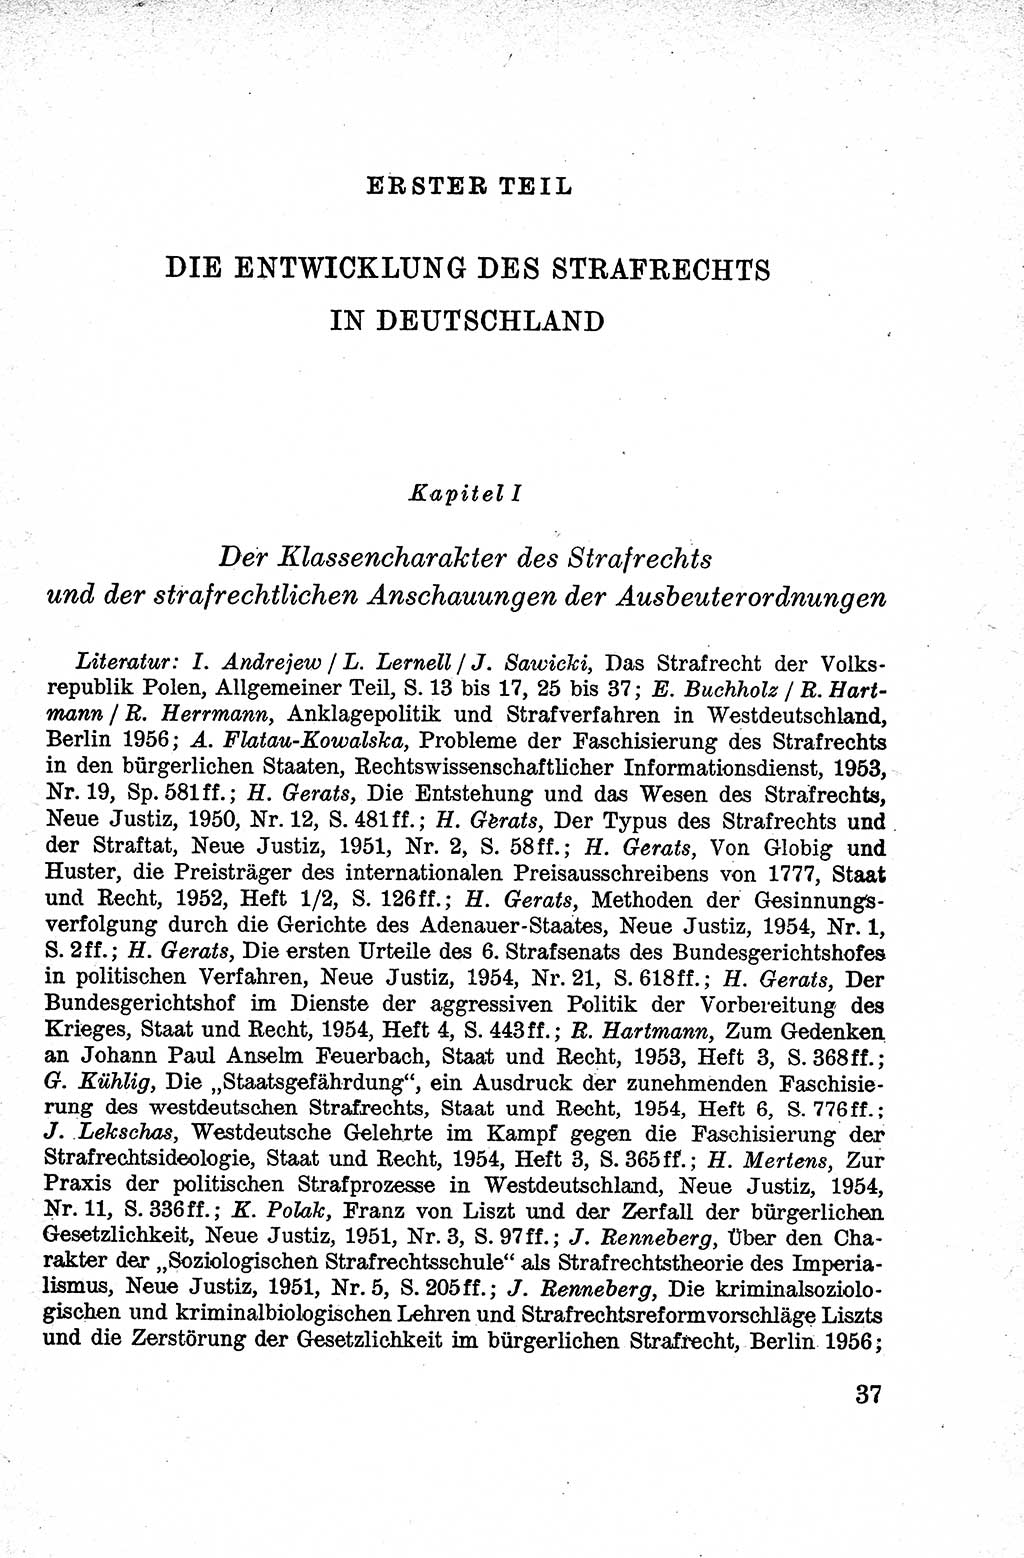 Lehrbuch des Strafrechts der Deutschen Demokratischen Republik (DDR), Allgemeiner Teil 1959, Seite 37 (Lb. Strafr. DDR AT 1959, S. 37)